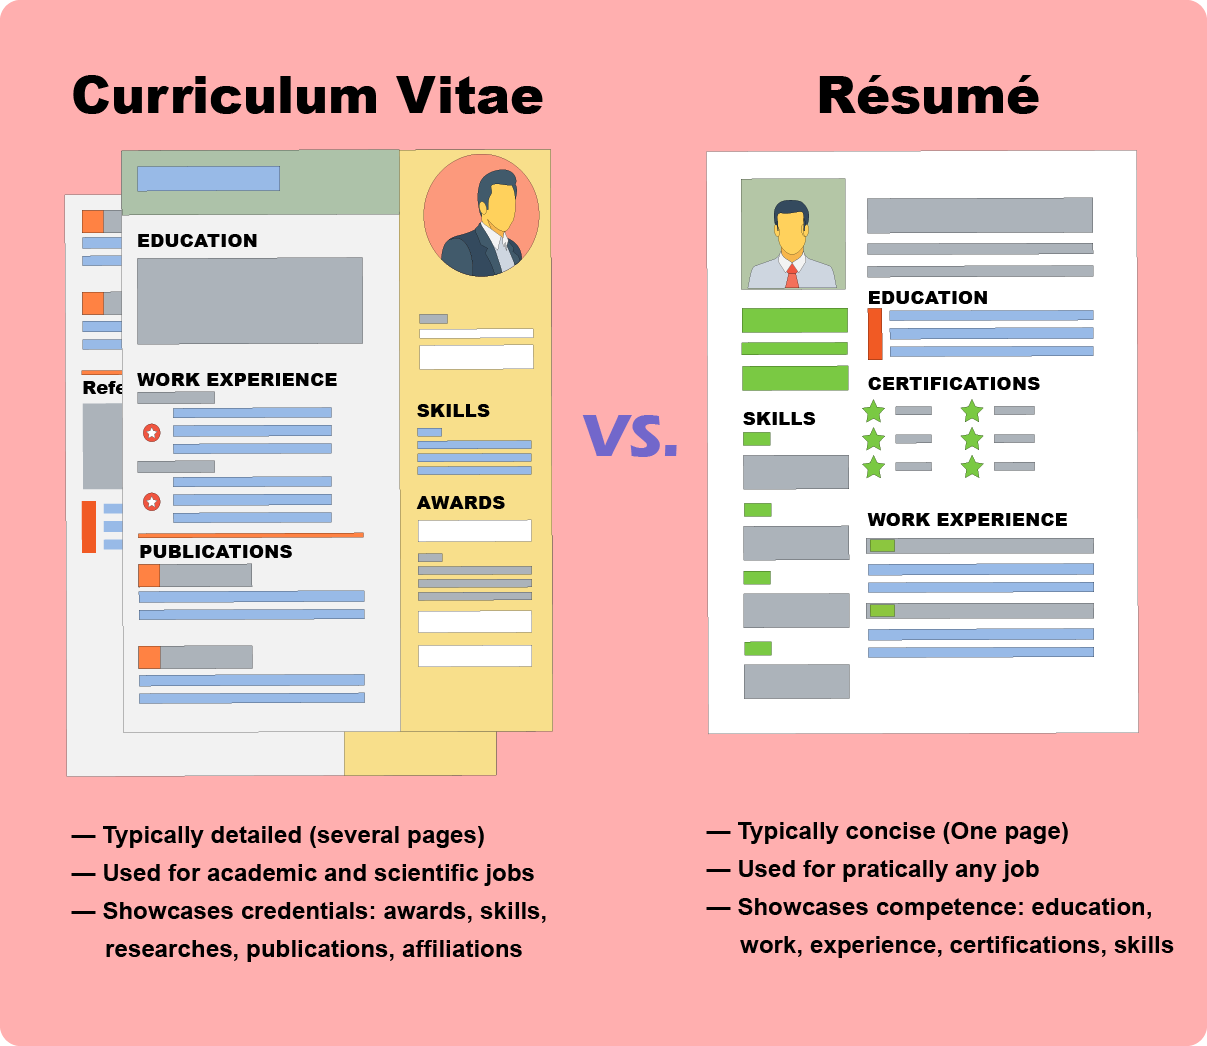 [fig 3] CV vs Resume